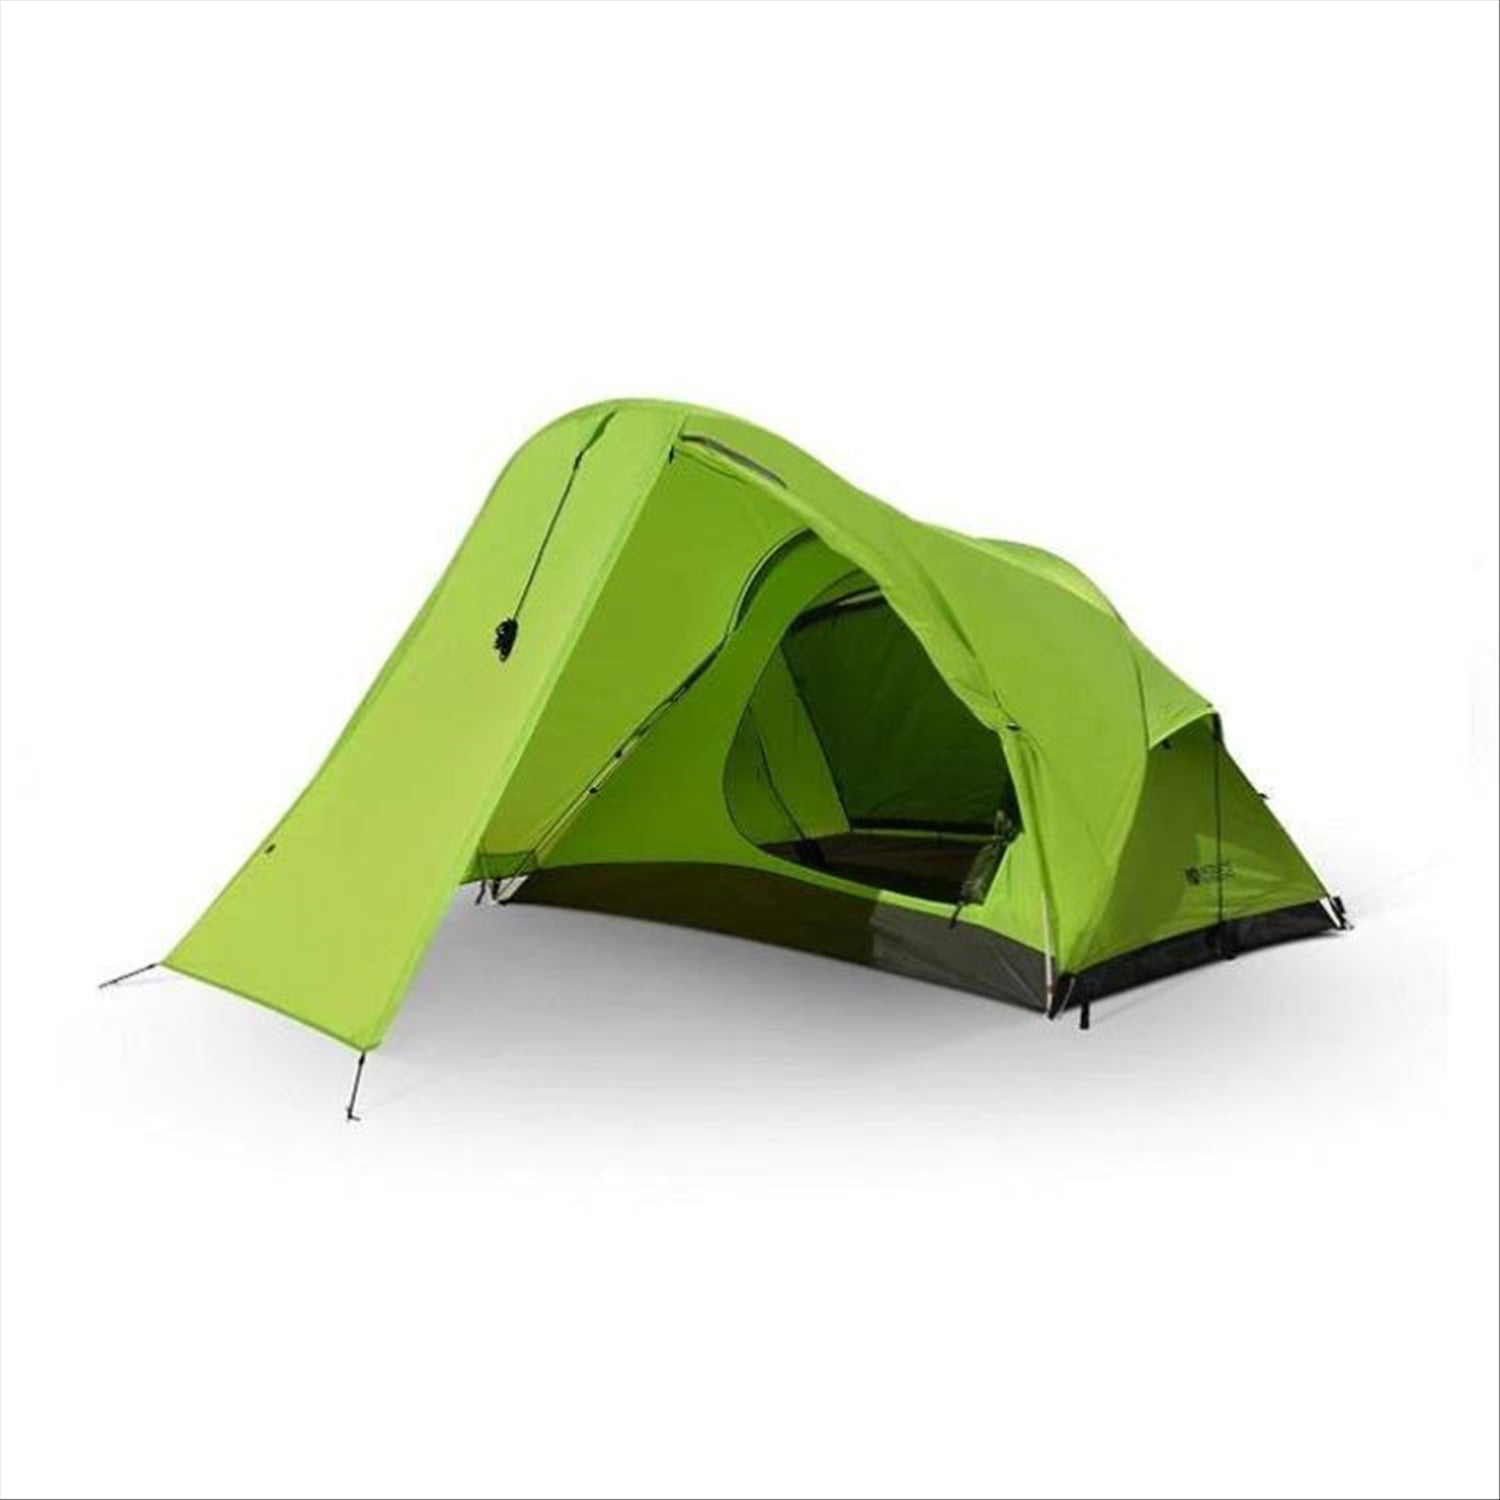 Intents Outdoors Tourer XLV 2 - 2 Person Tent Extra Large Vestibule, 3.4kg